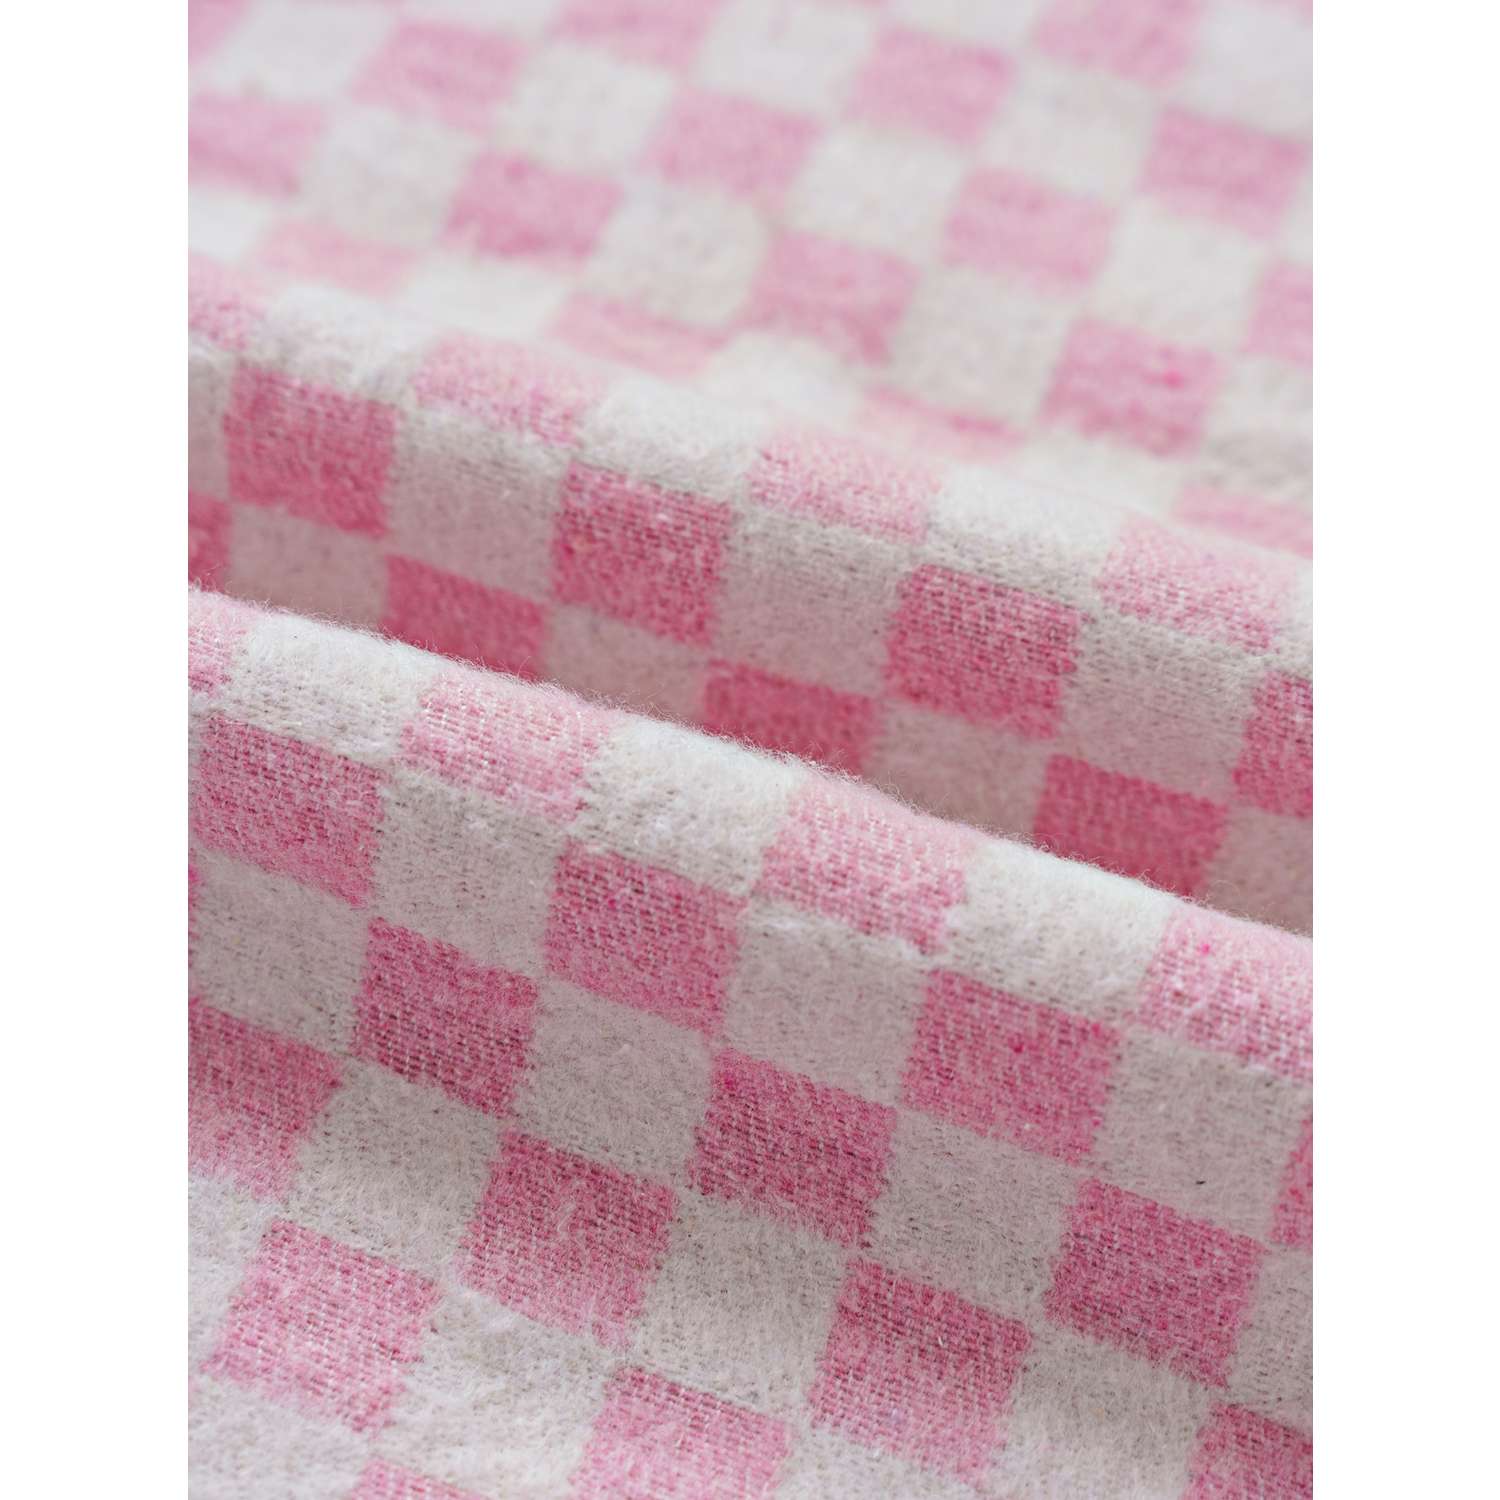 Одеяло байковое Суконная фабрика г. Шуя 140х205 рисунок клетка розовый - фото 1